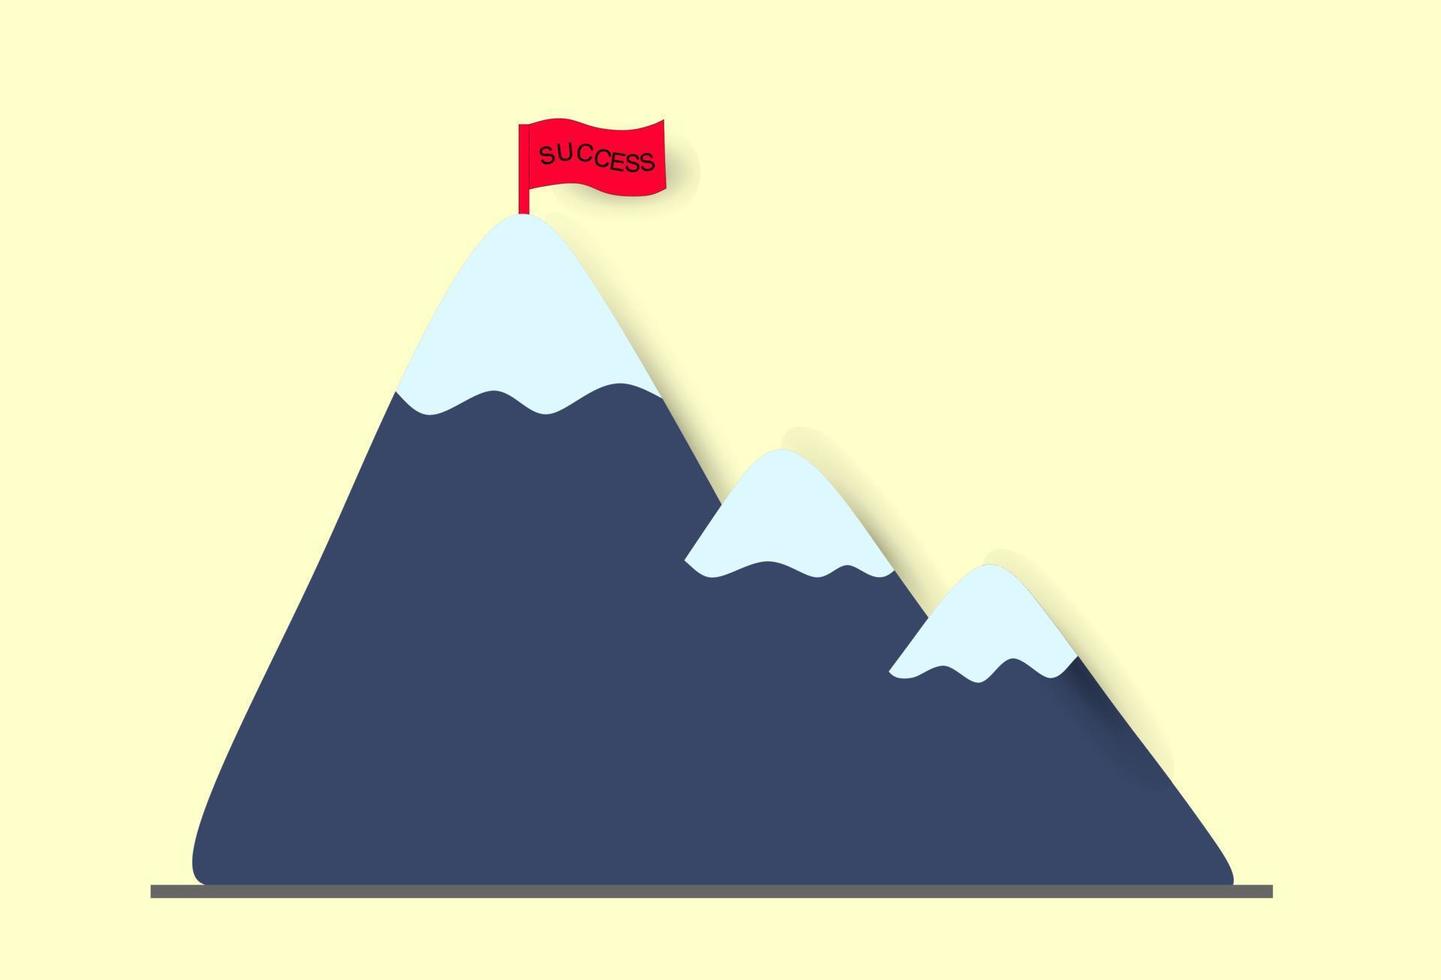 papercut-pictogram bergmotivatiedoel met succesvlag, voor hoger klimmen, carrière, bedrijfsontwikkeling en het bereiken van dromen vector